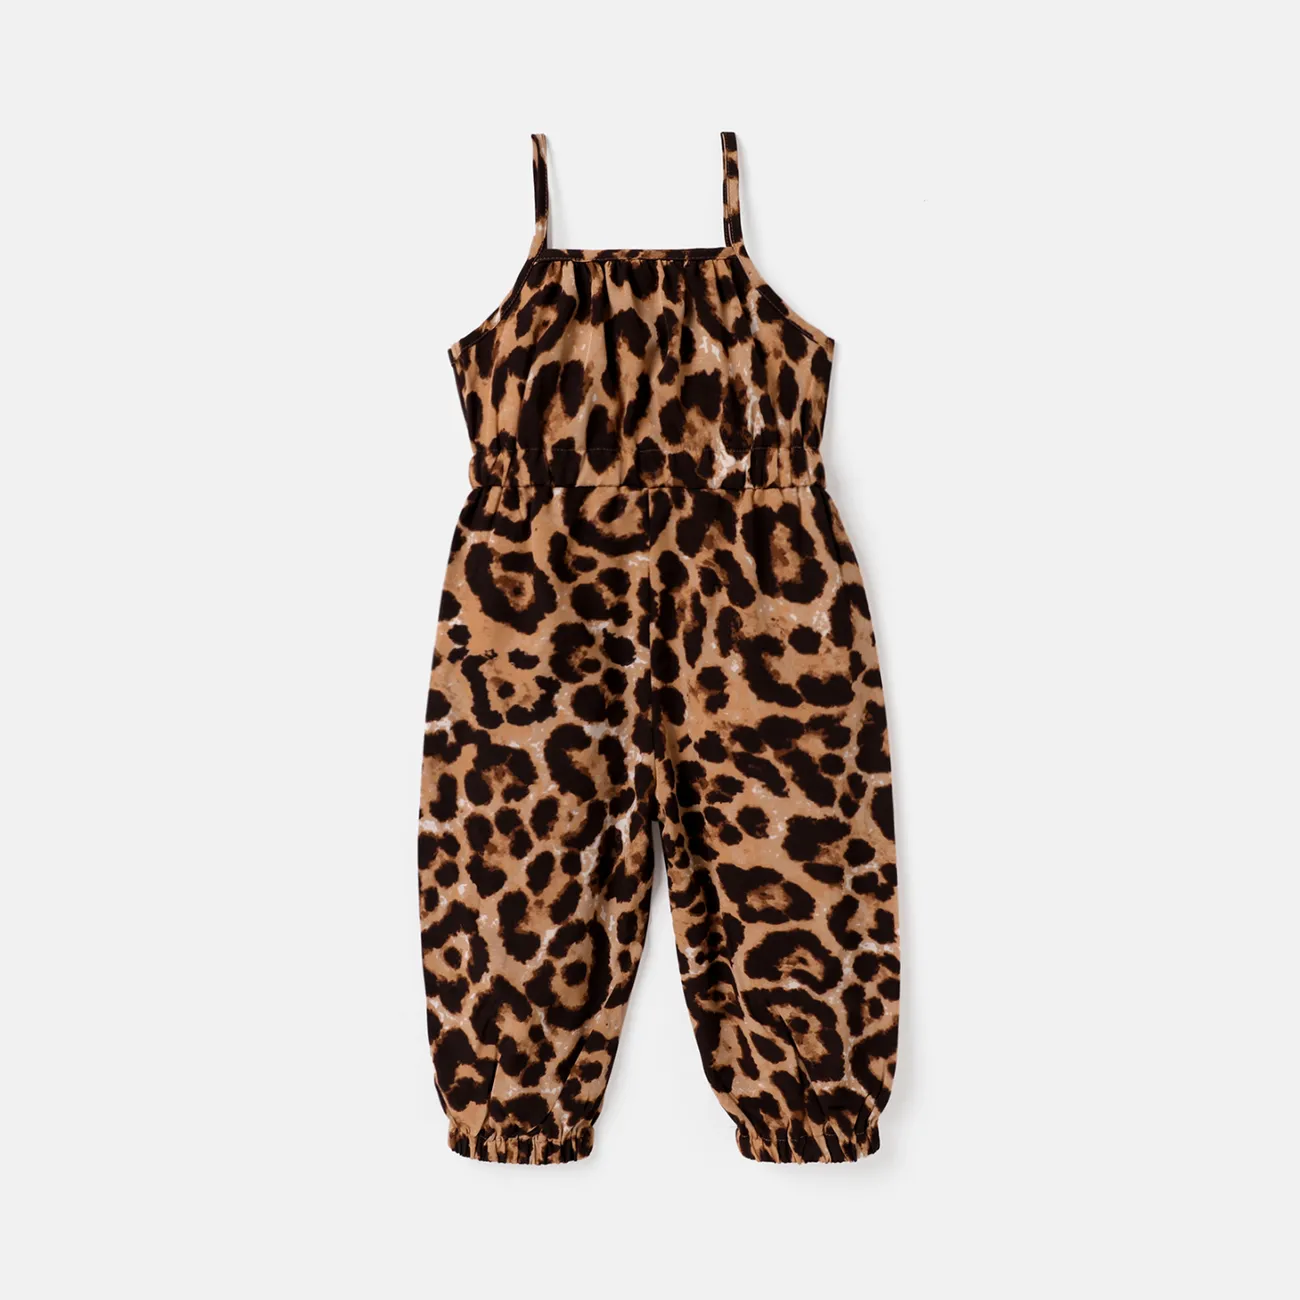 Toddler Girl Leopard Print Bowknot Design Slip Jumpsuits Brown big image 1